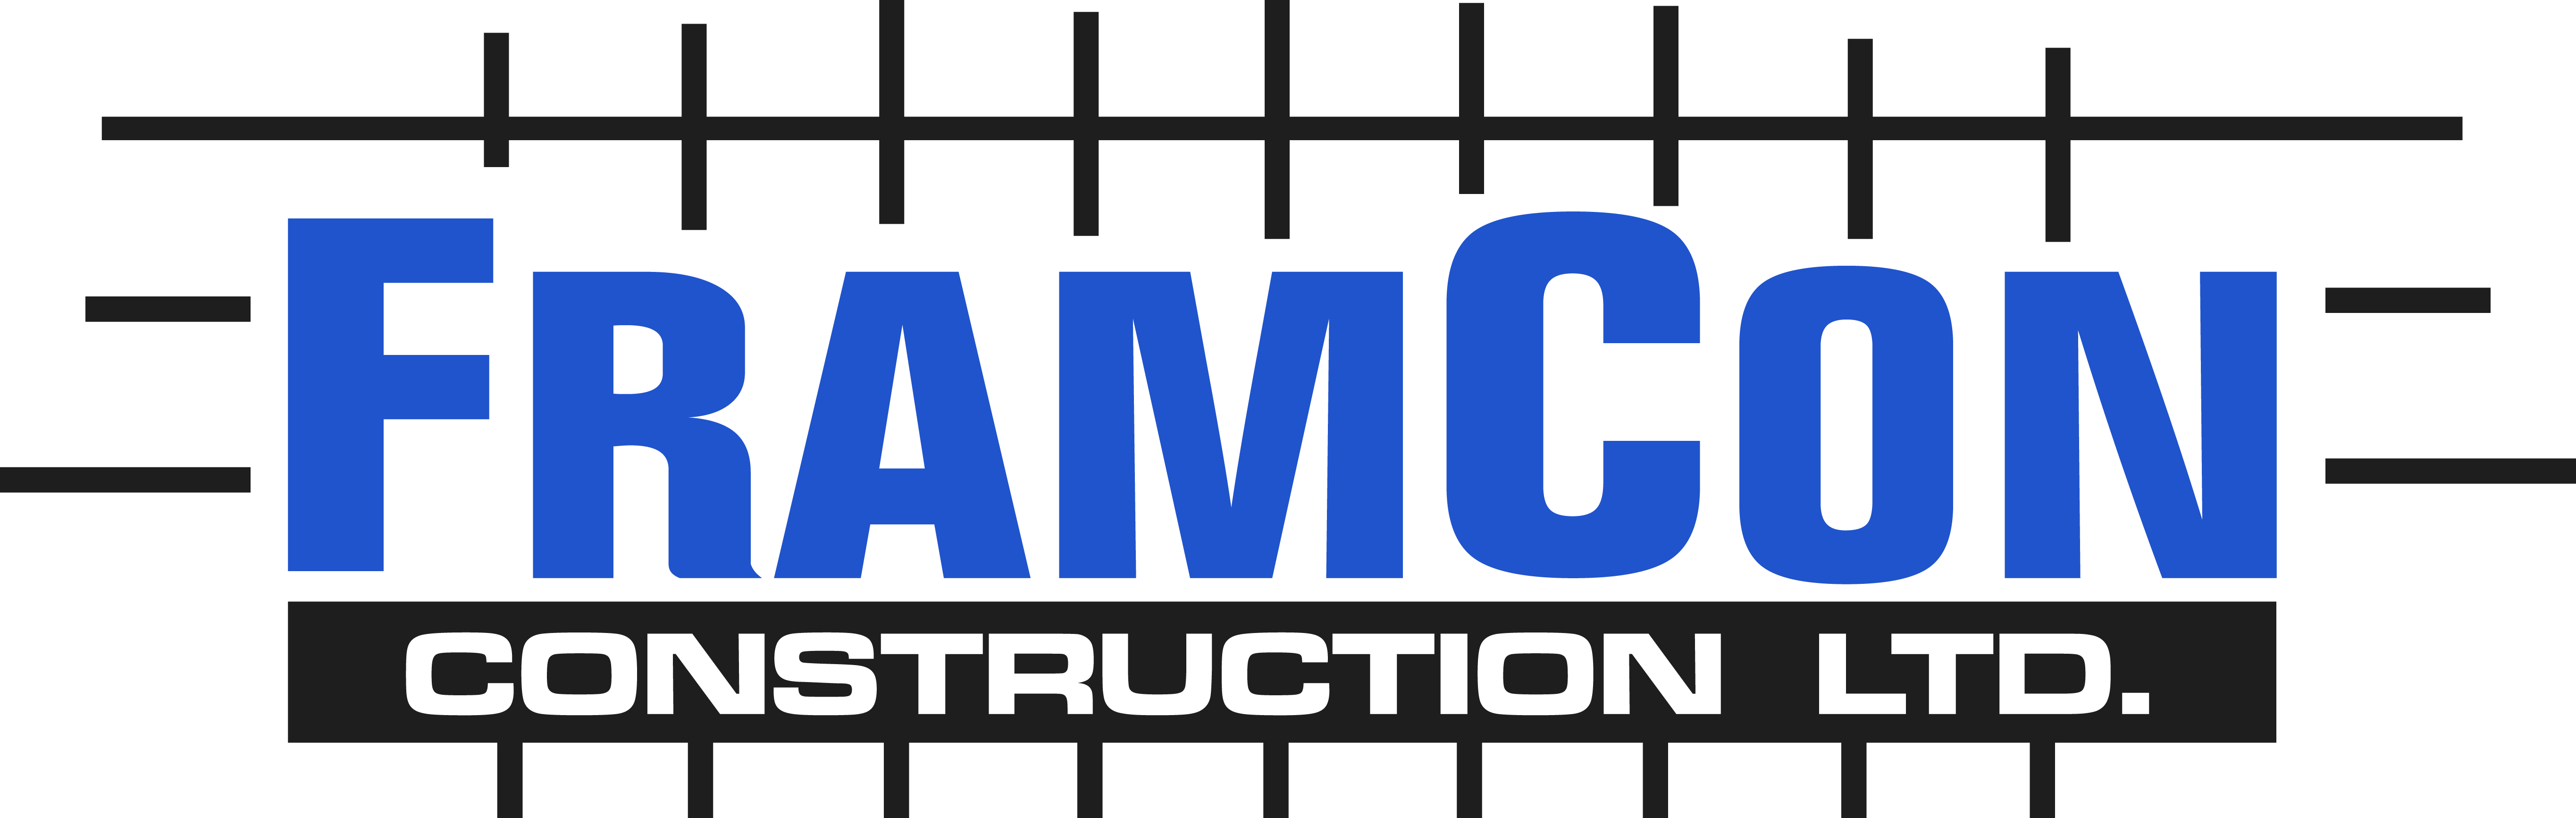 FramCon Construction Ltd.